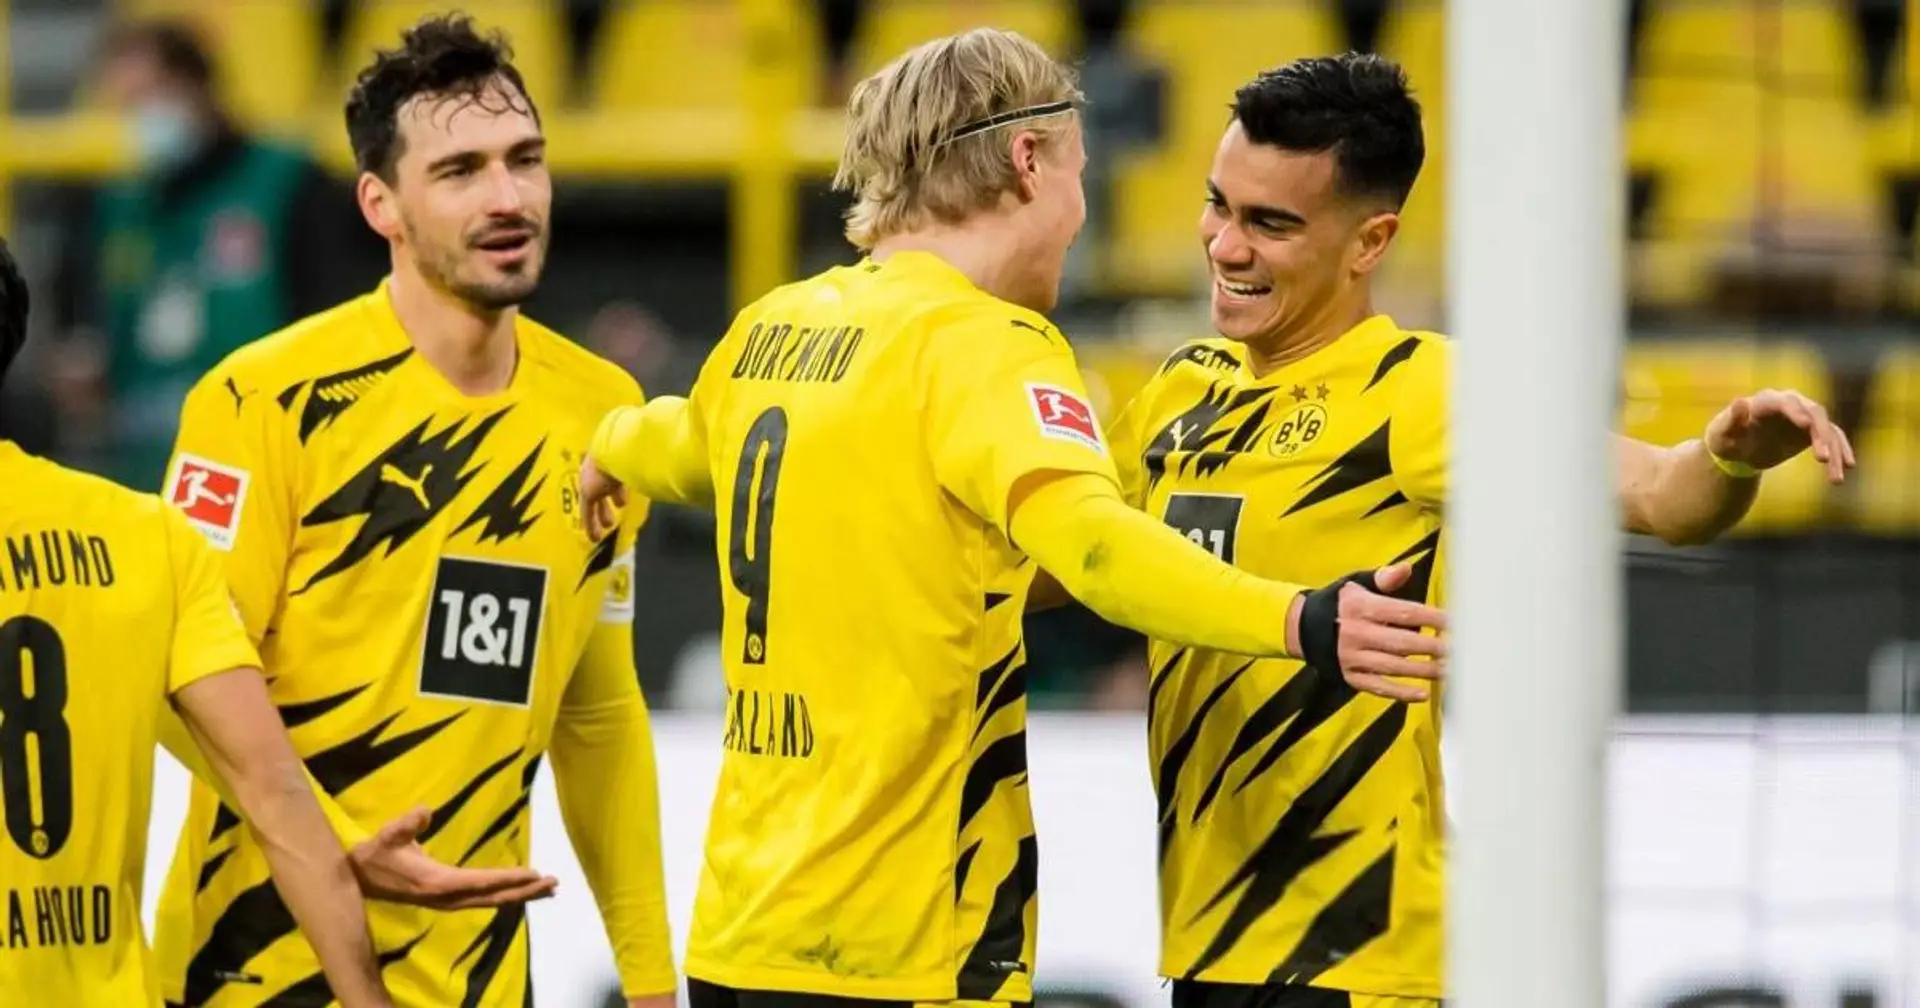 Reinier marque son premier but pour le Borussia lors de sa première touche de balle, 1 minute après son entrée en jeu (vidéo)